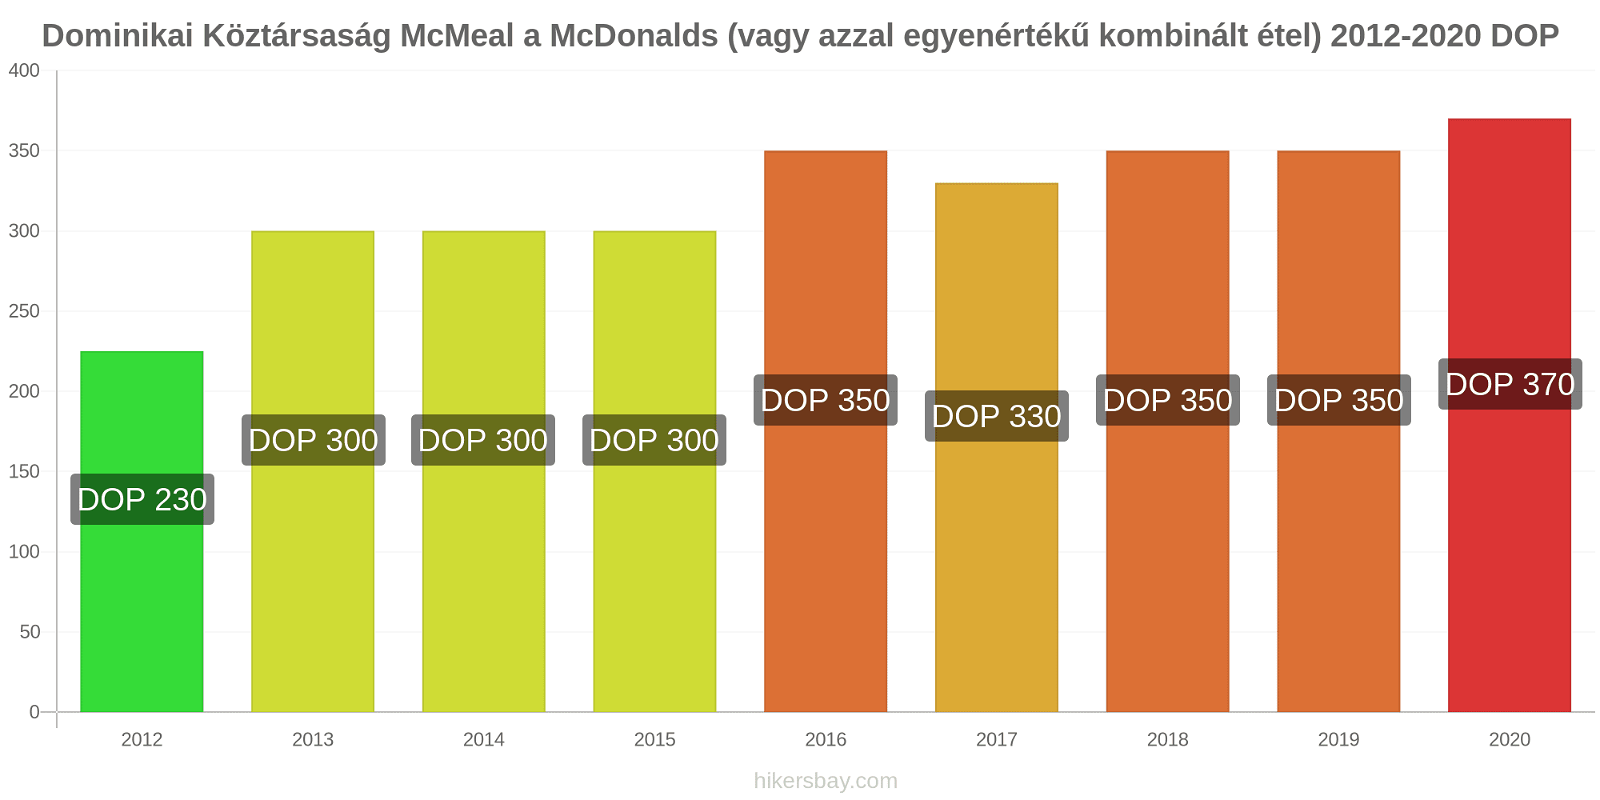 Dominikai Köztársaság árváltozások McMeal a McDonalds (vagy azzal egyenértékű kombinált étel) hikersbay.com